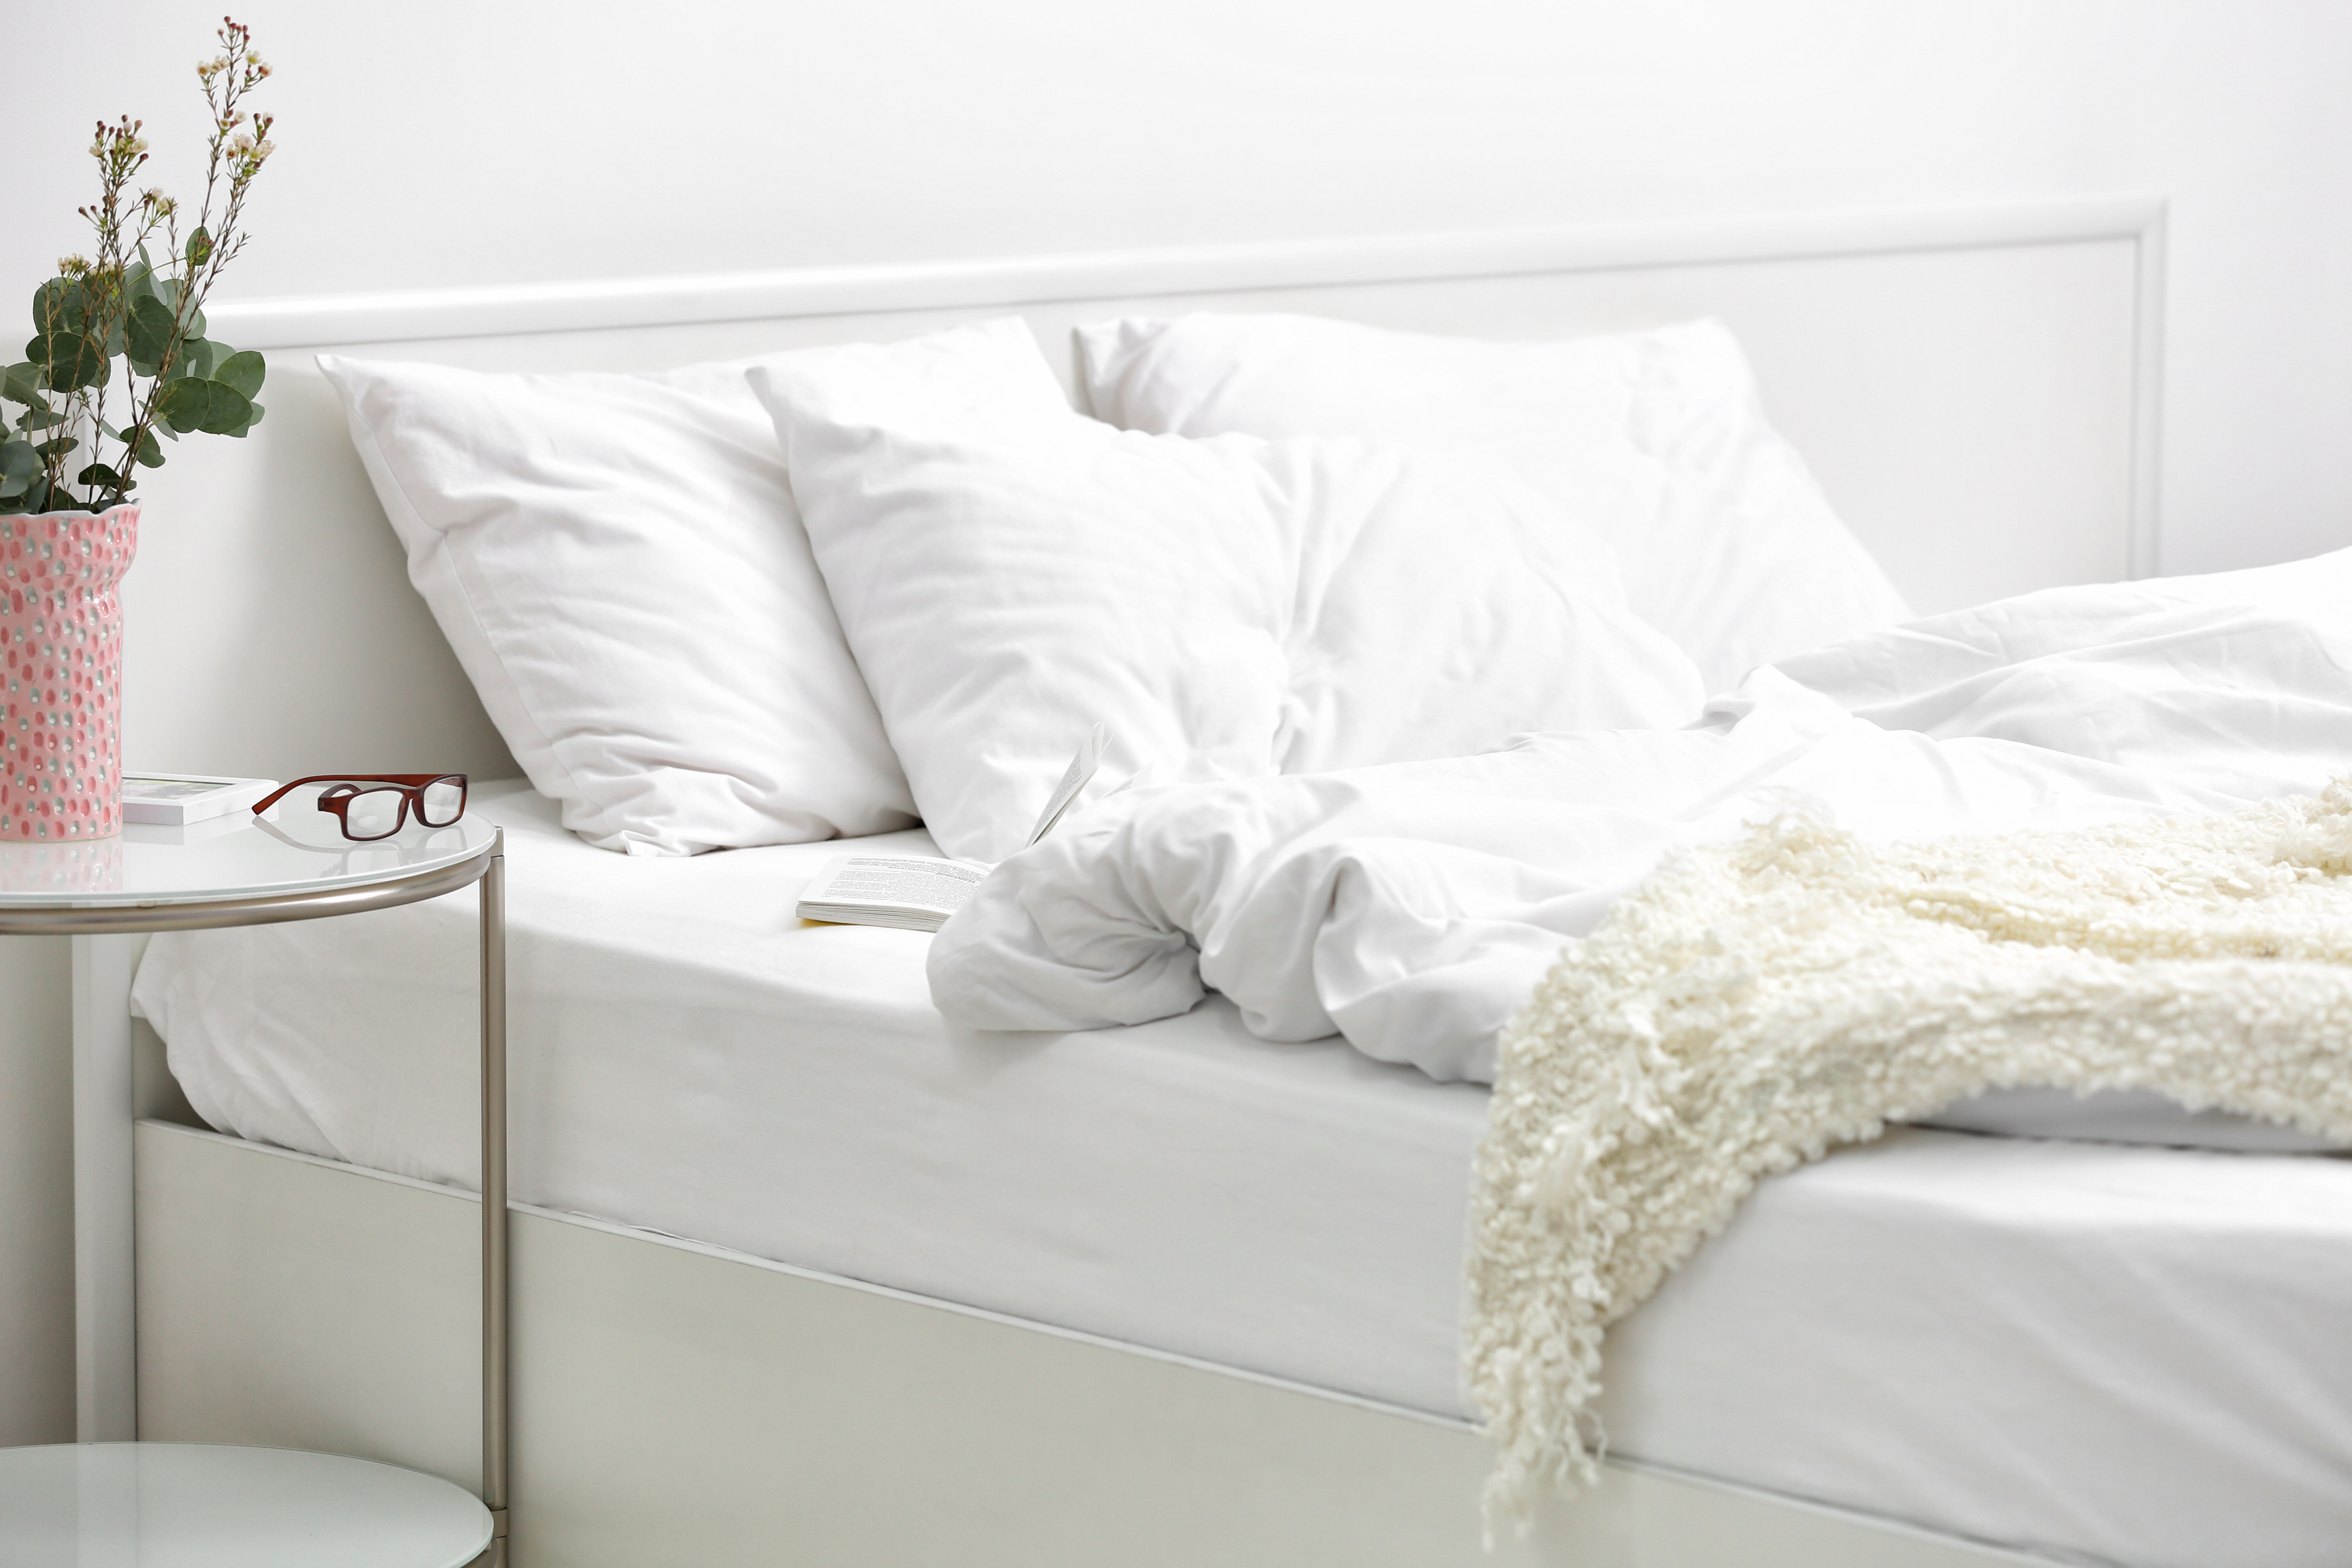 Bedroom Color Ideas: Serene Hues for a Good Sleep